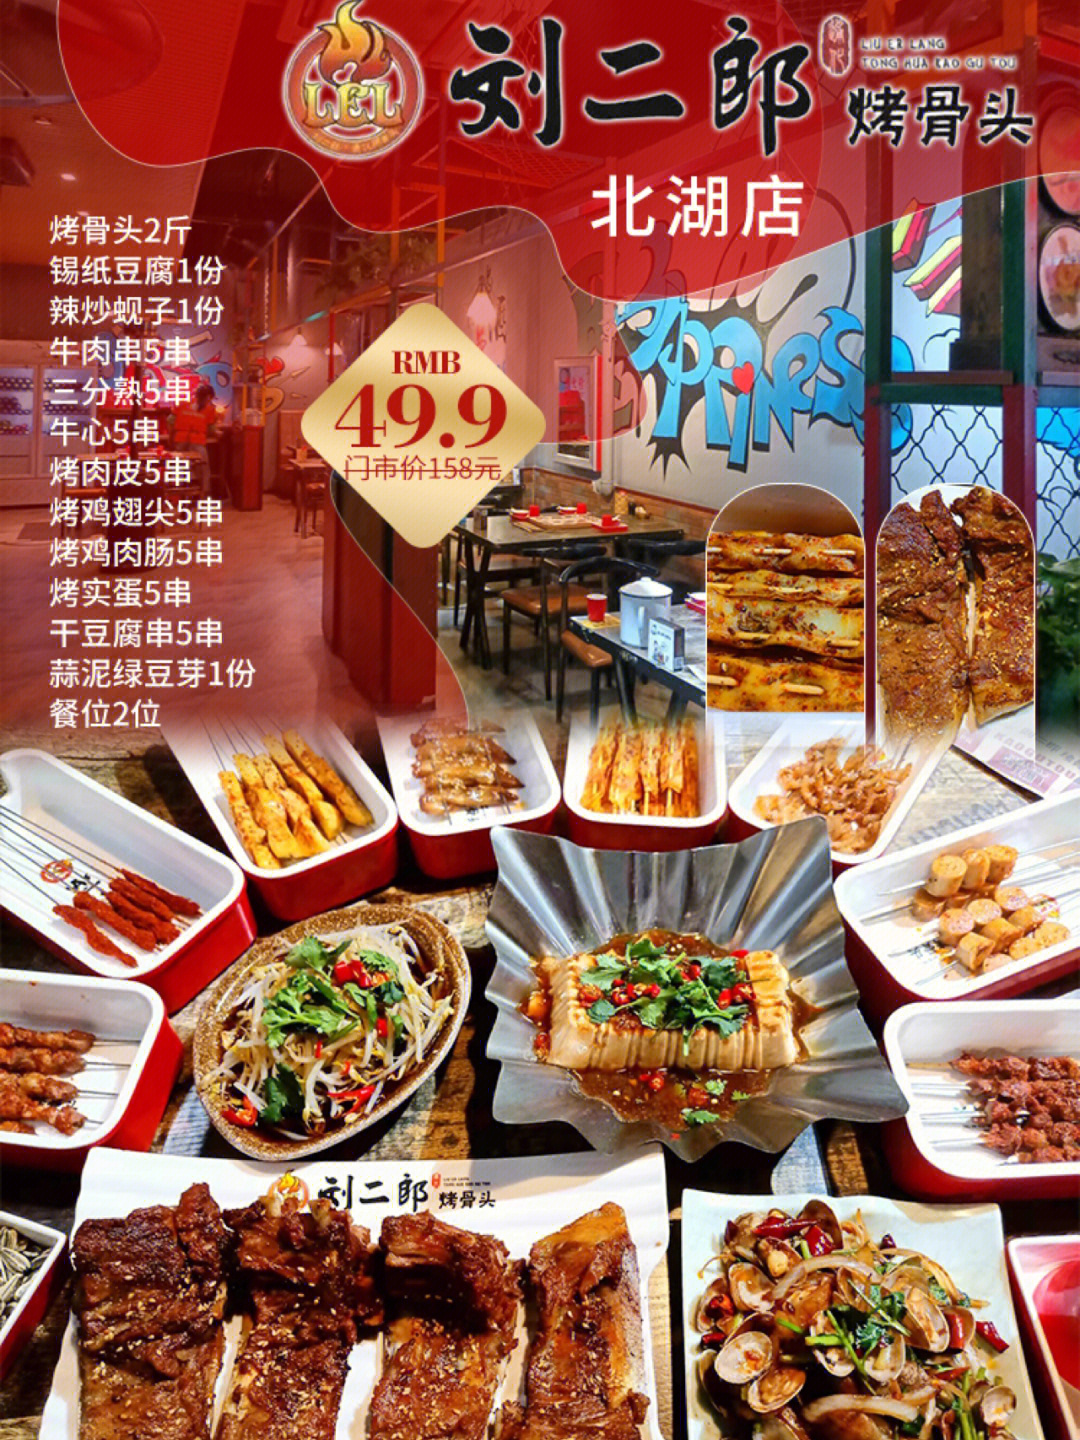 刘二郎烤骨头菜单图片